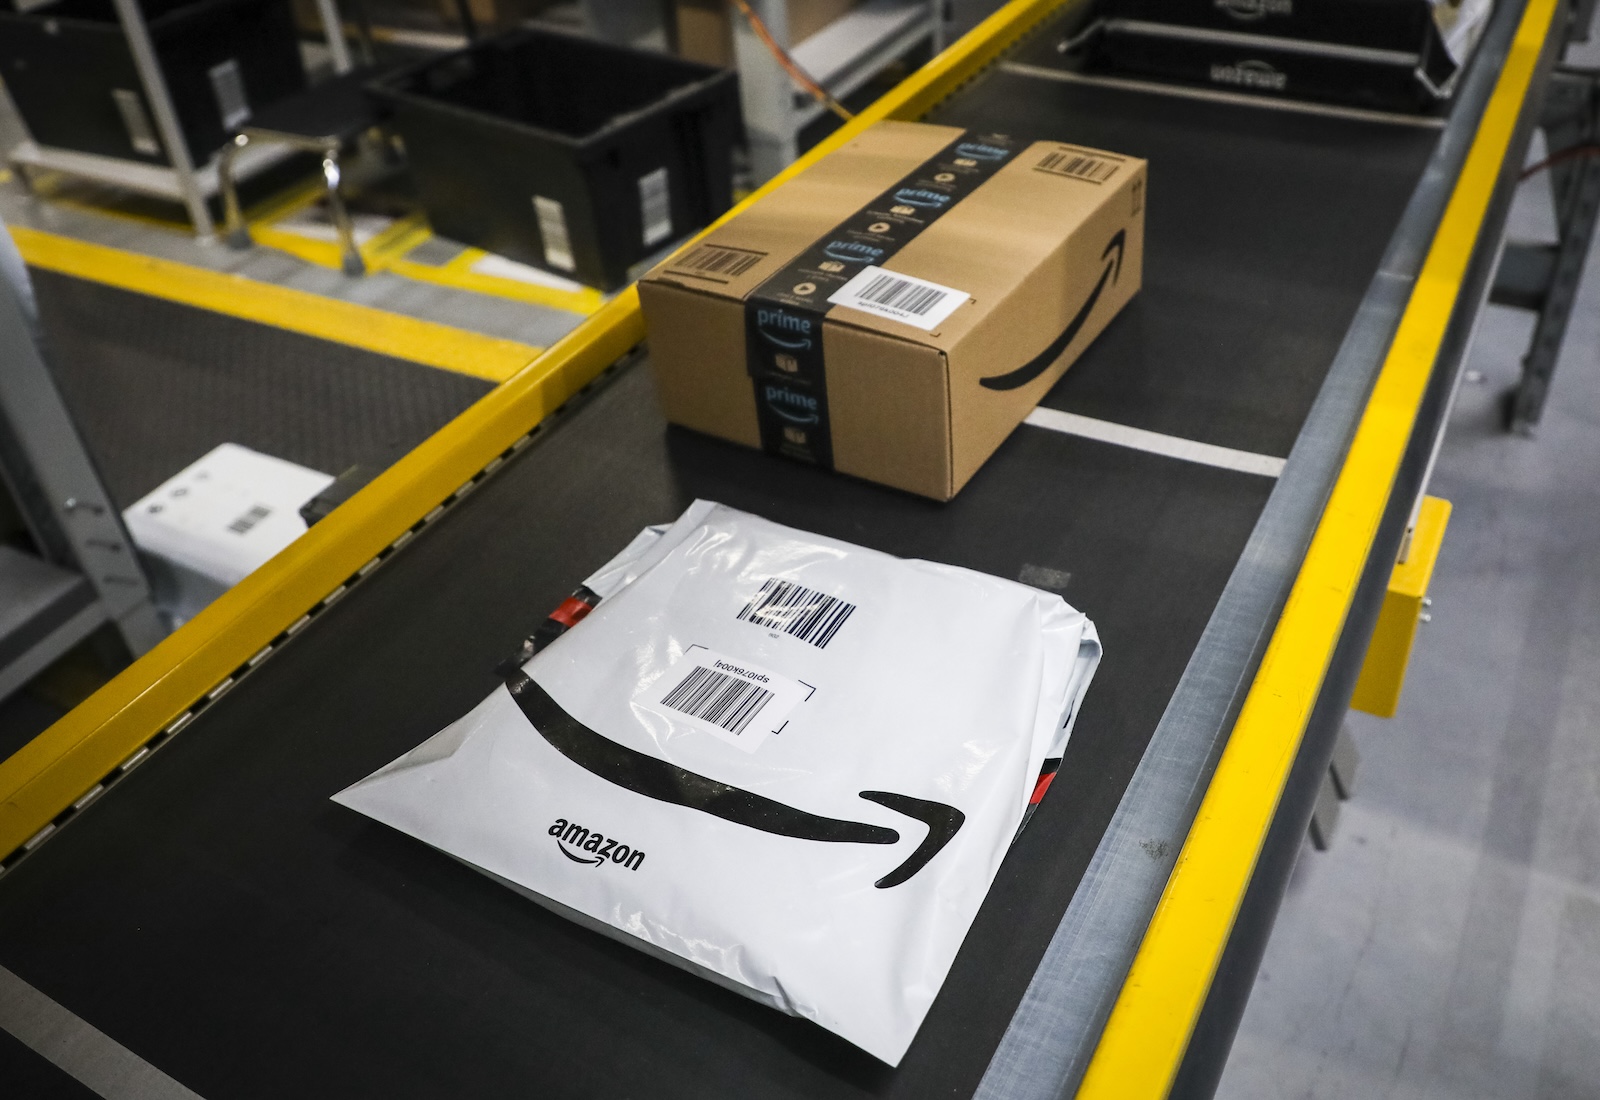 Amazon bag on conveyor belt